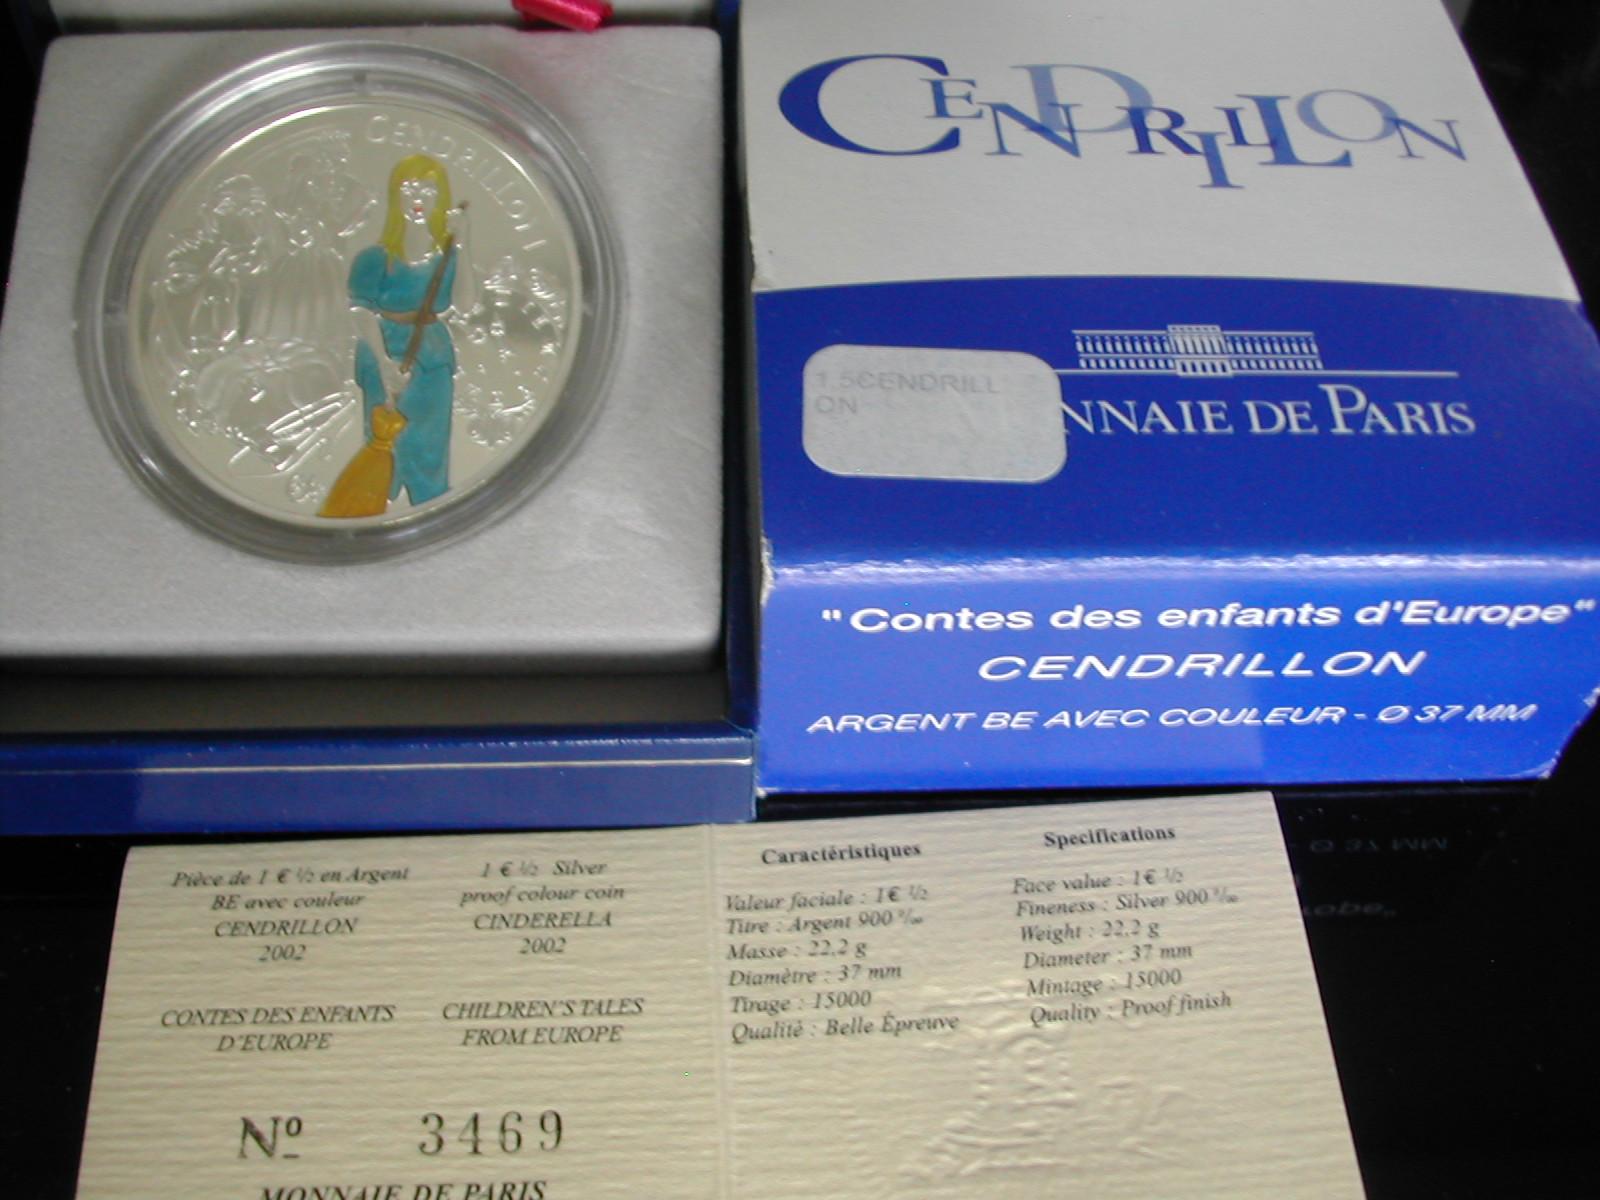 1 5 france 2002 cendrillon a